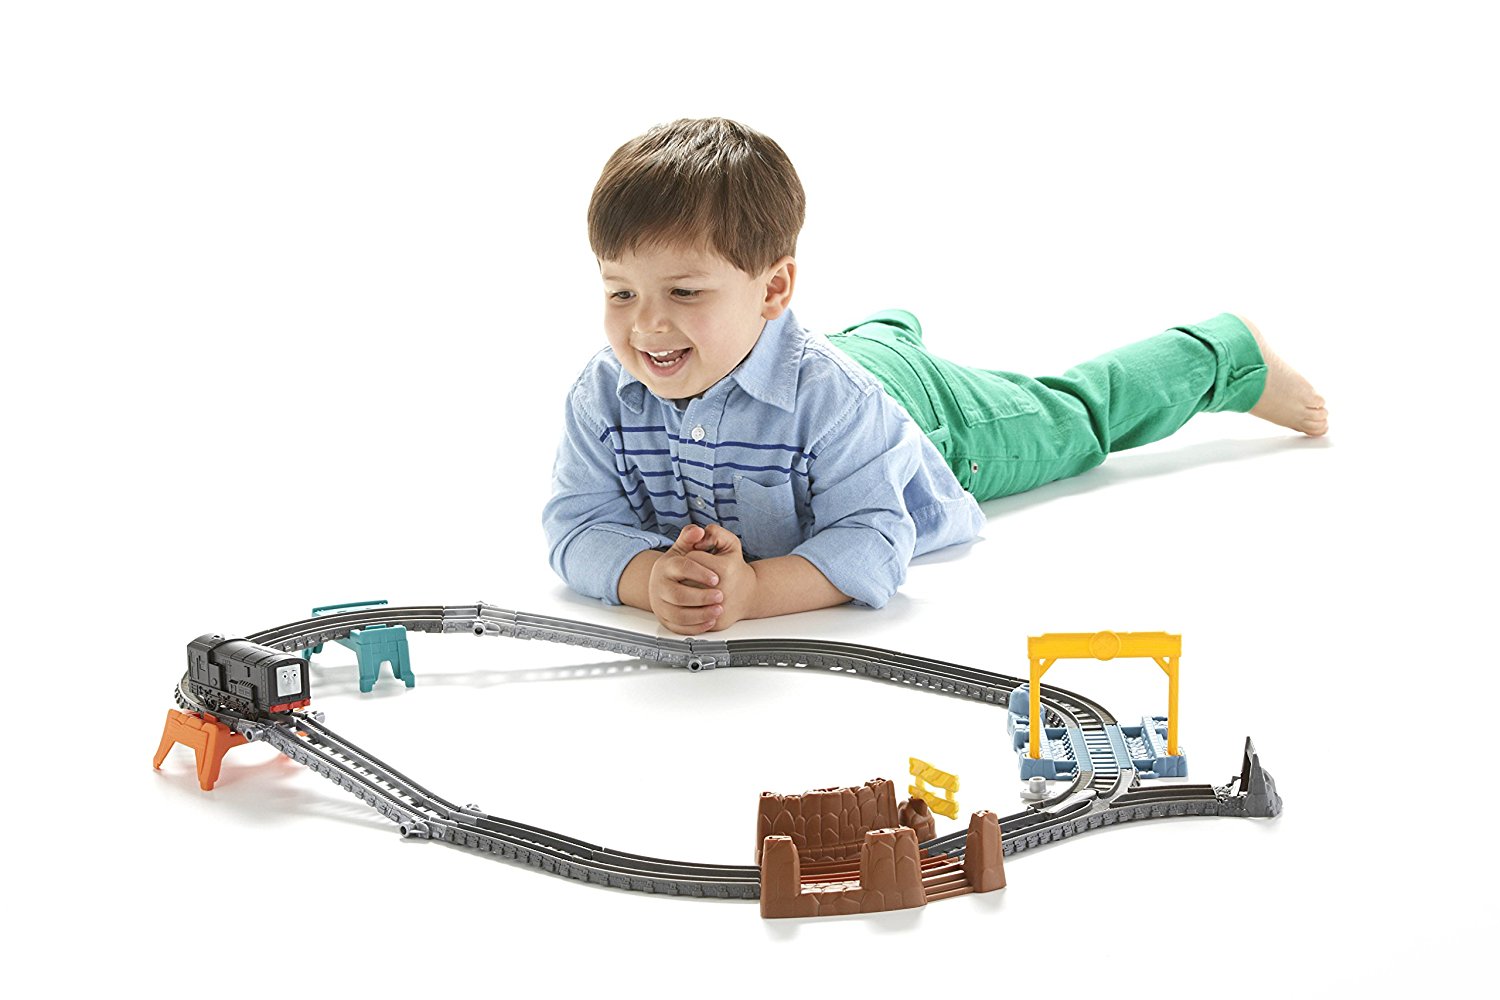 Набор для построения железной дороги 3-в-1 - Томас и его друзья  